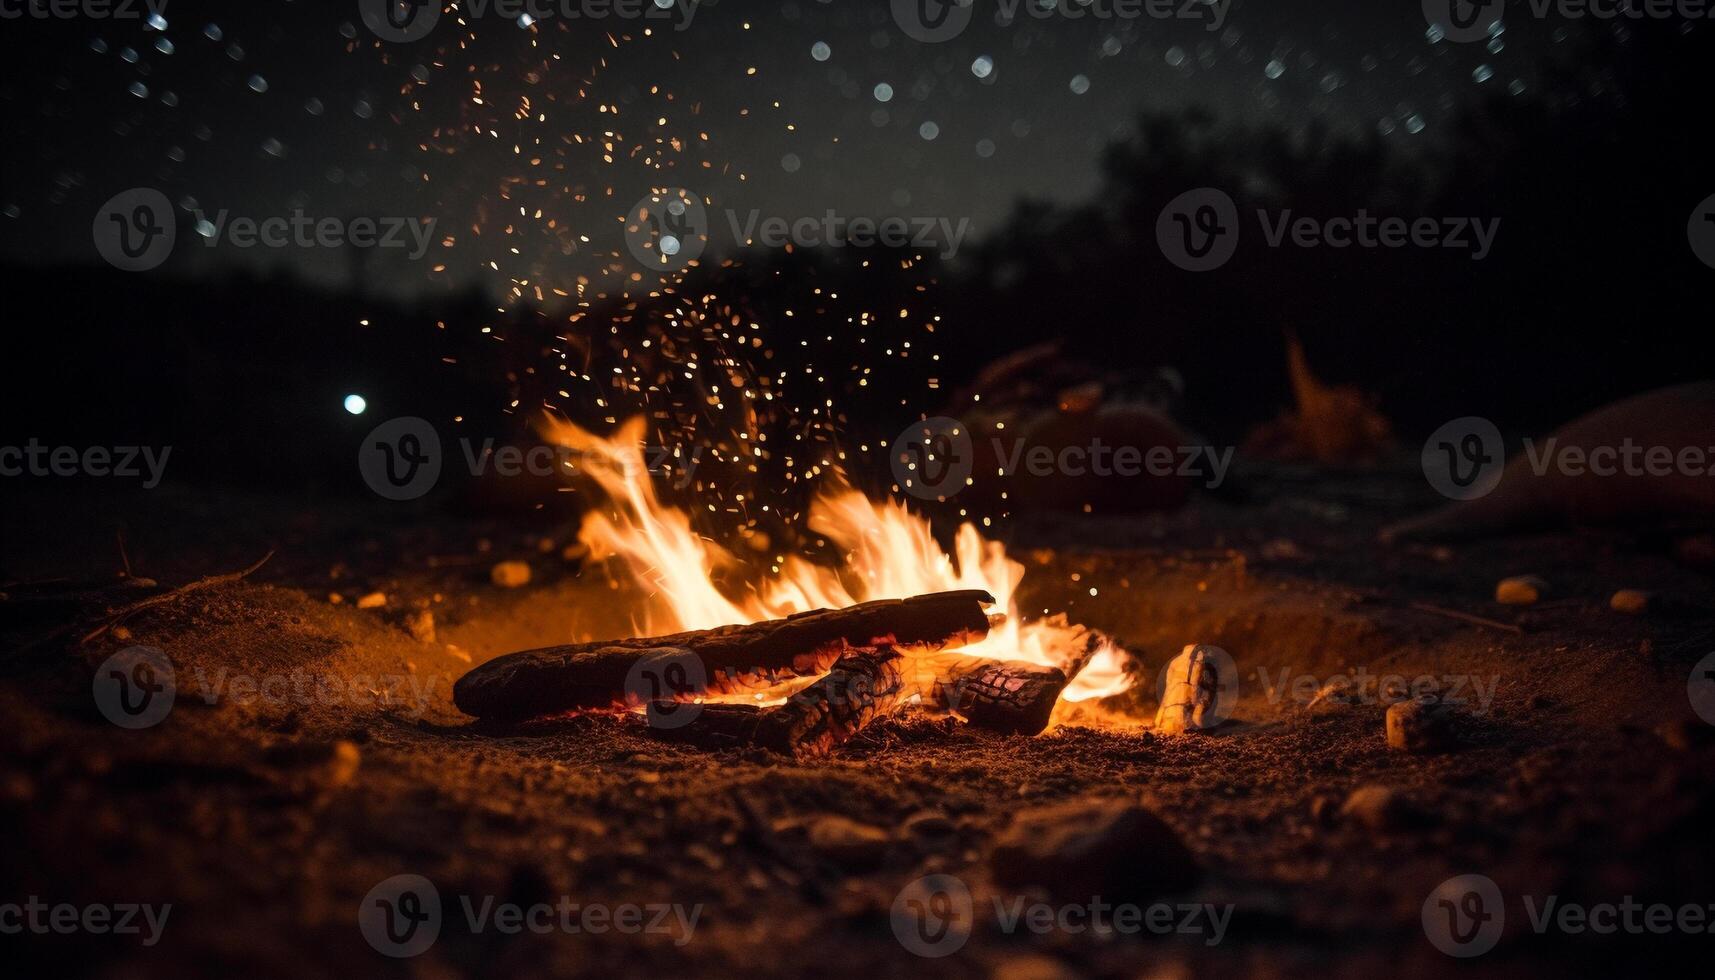 natuur ontsteekt hel, brandend brandhout en steenkool in vreugdevuur gegenereerd door ai foto